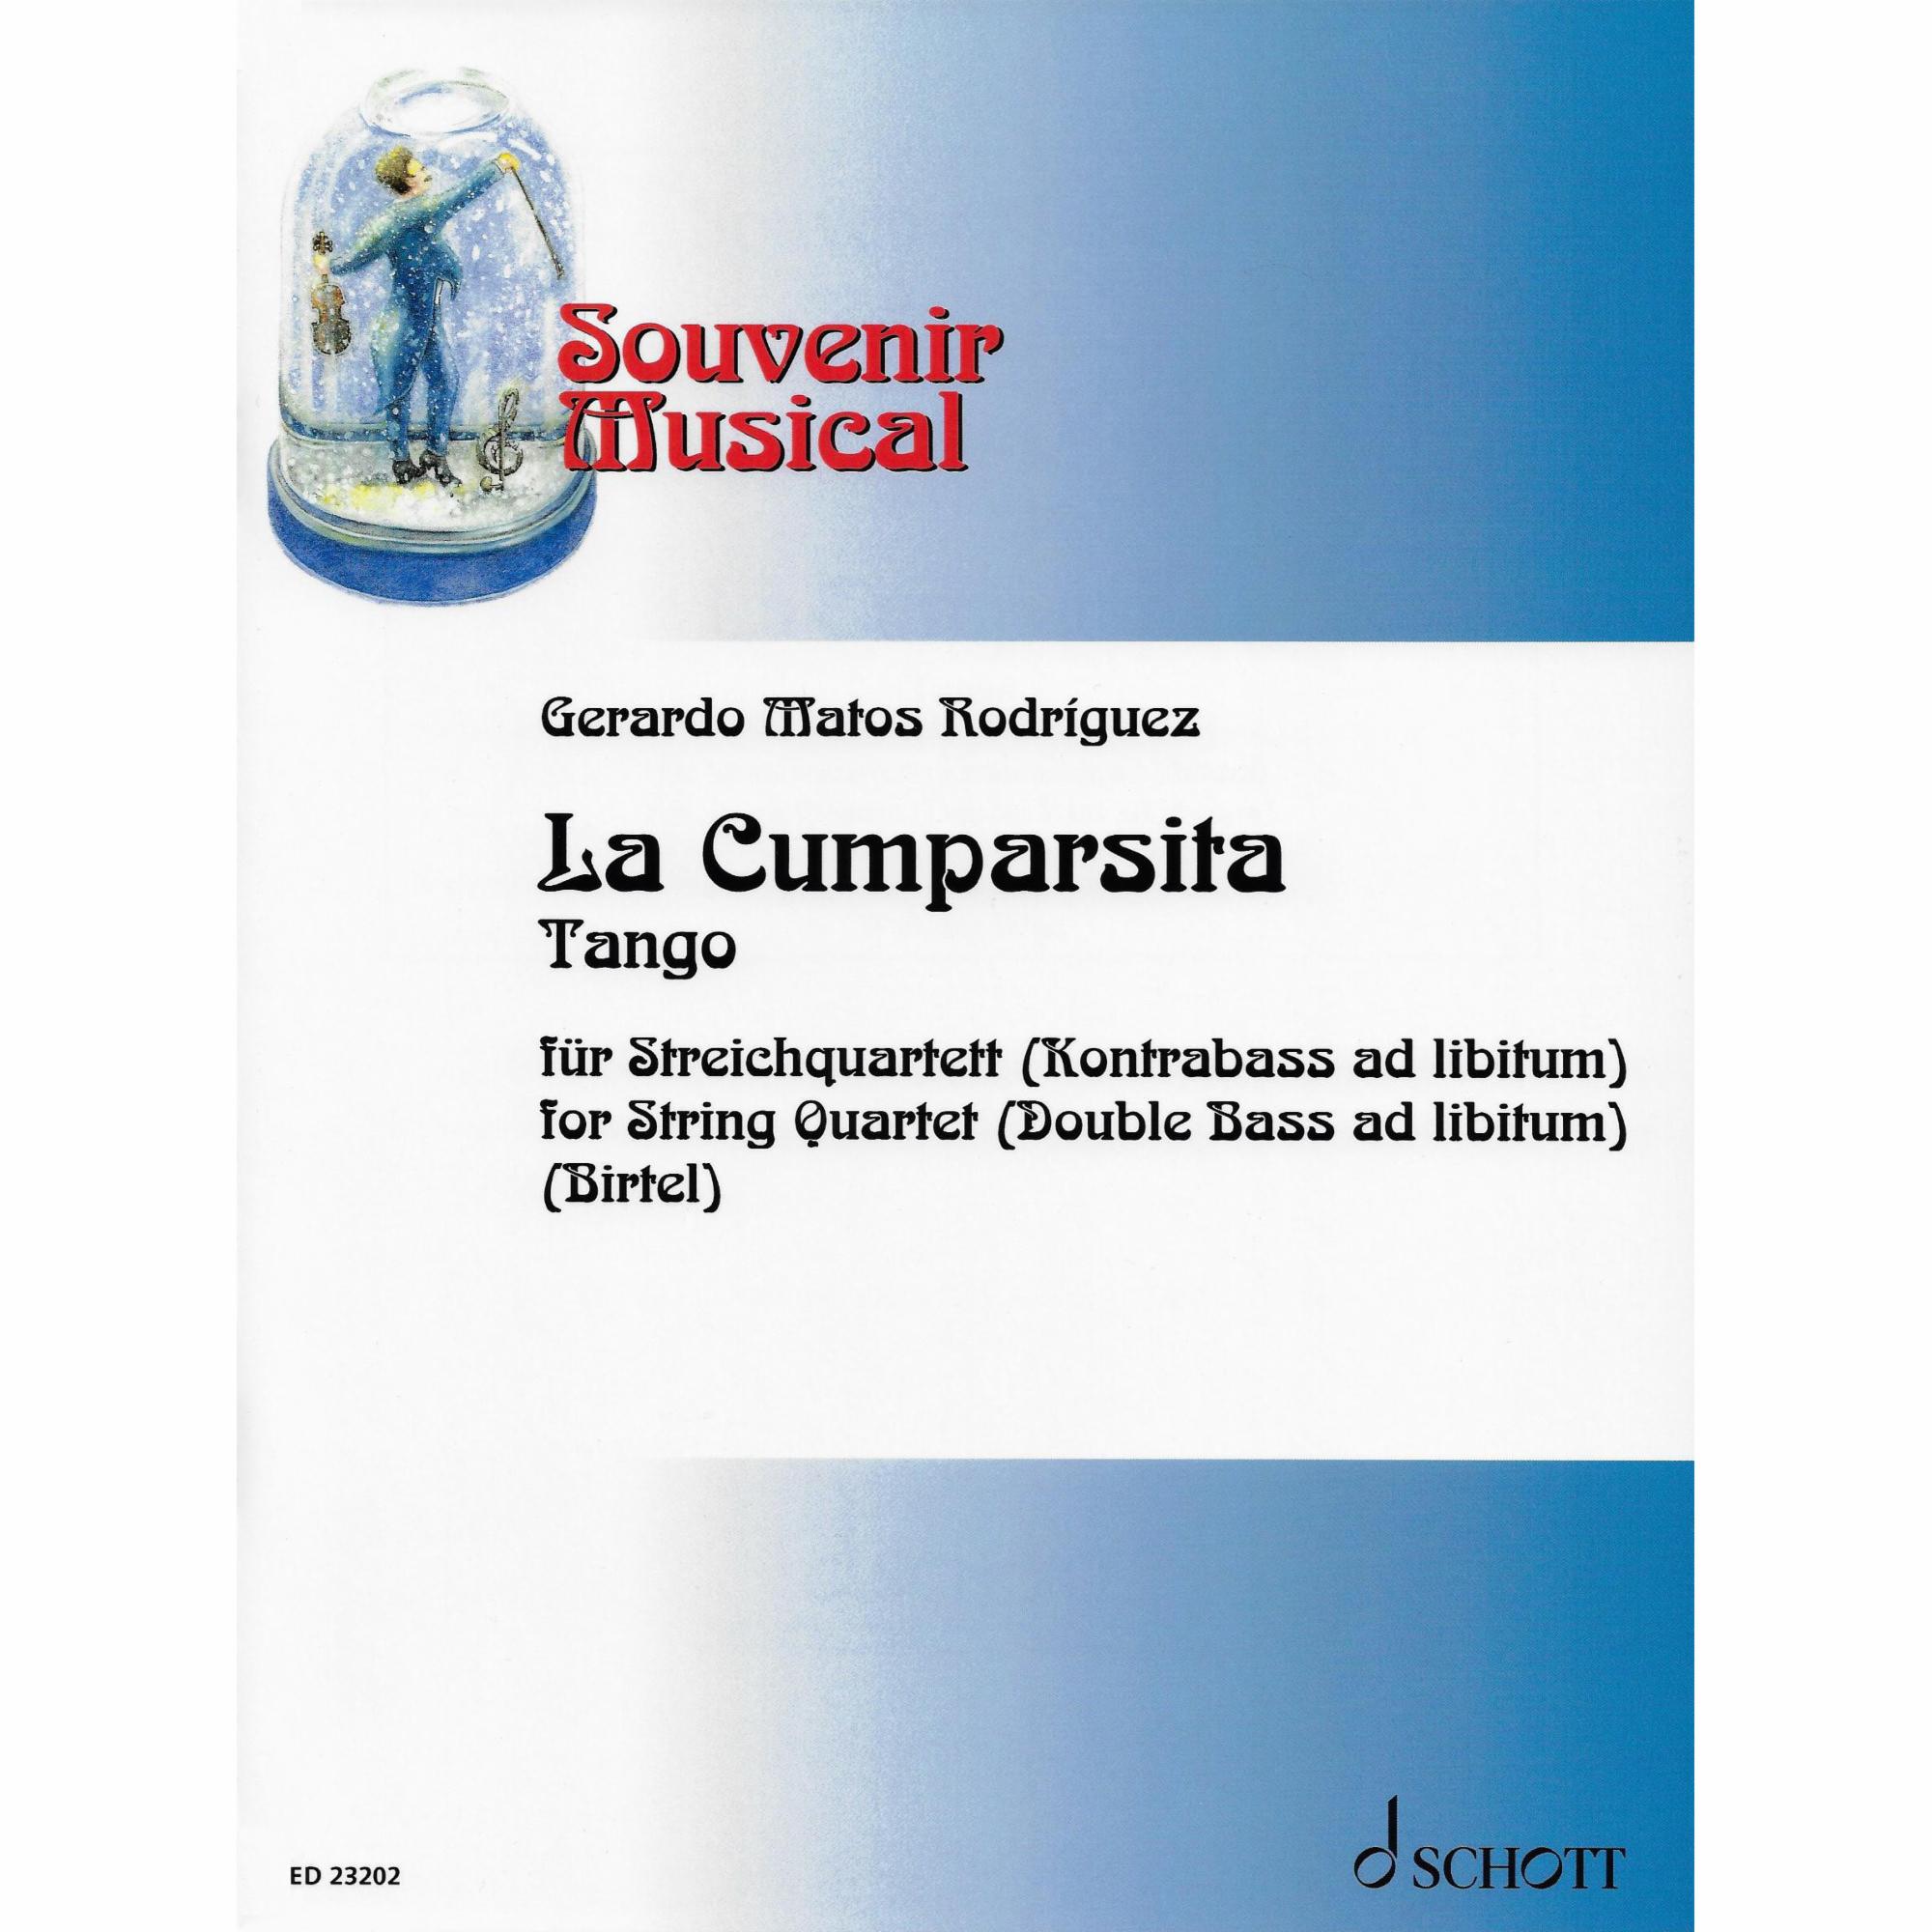 La Cumparsita for String Quartet